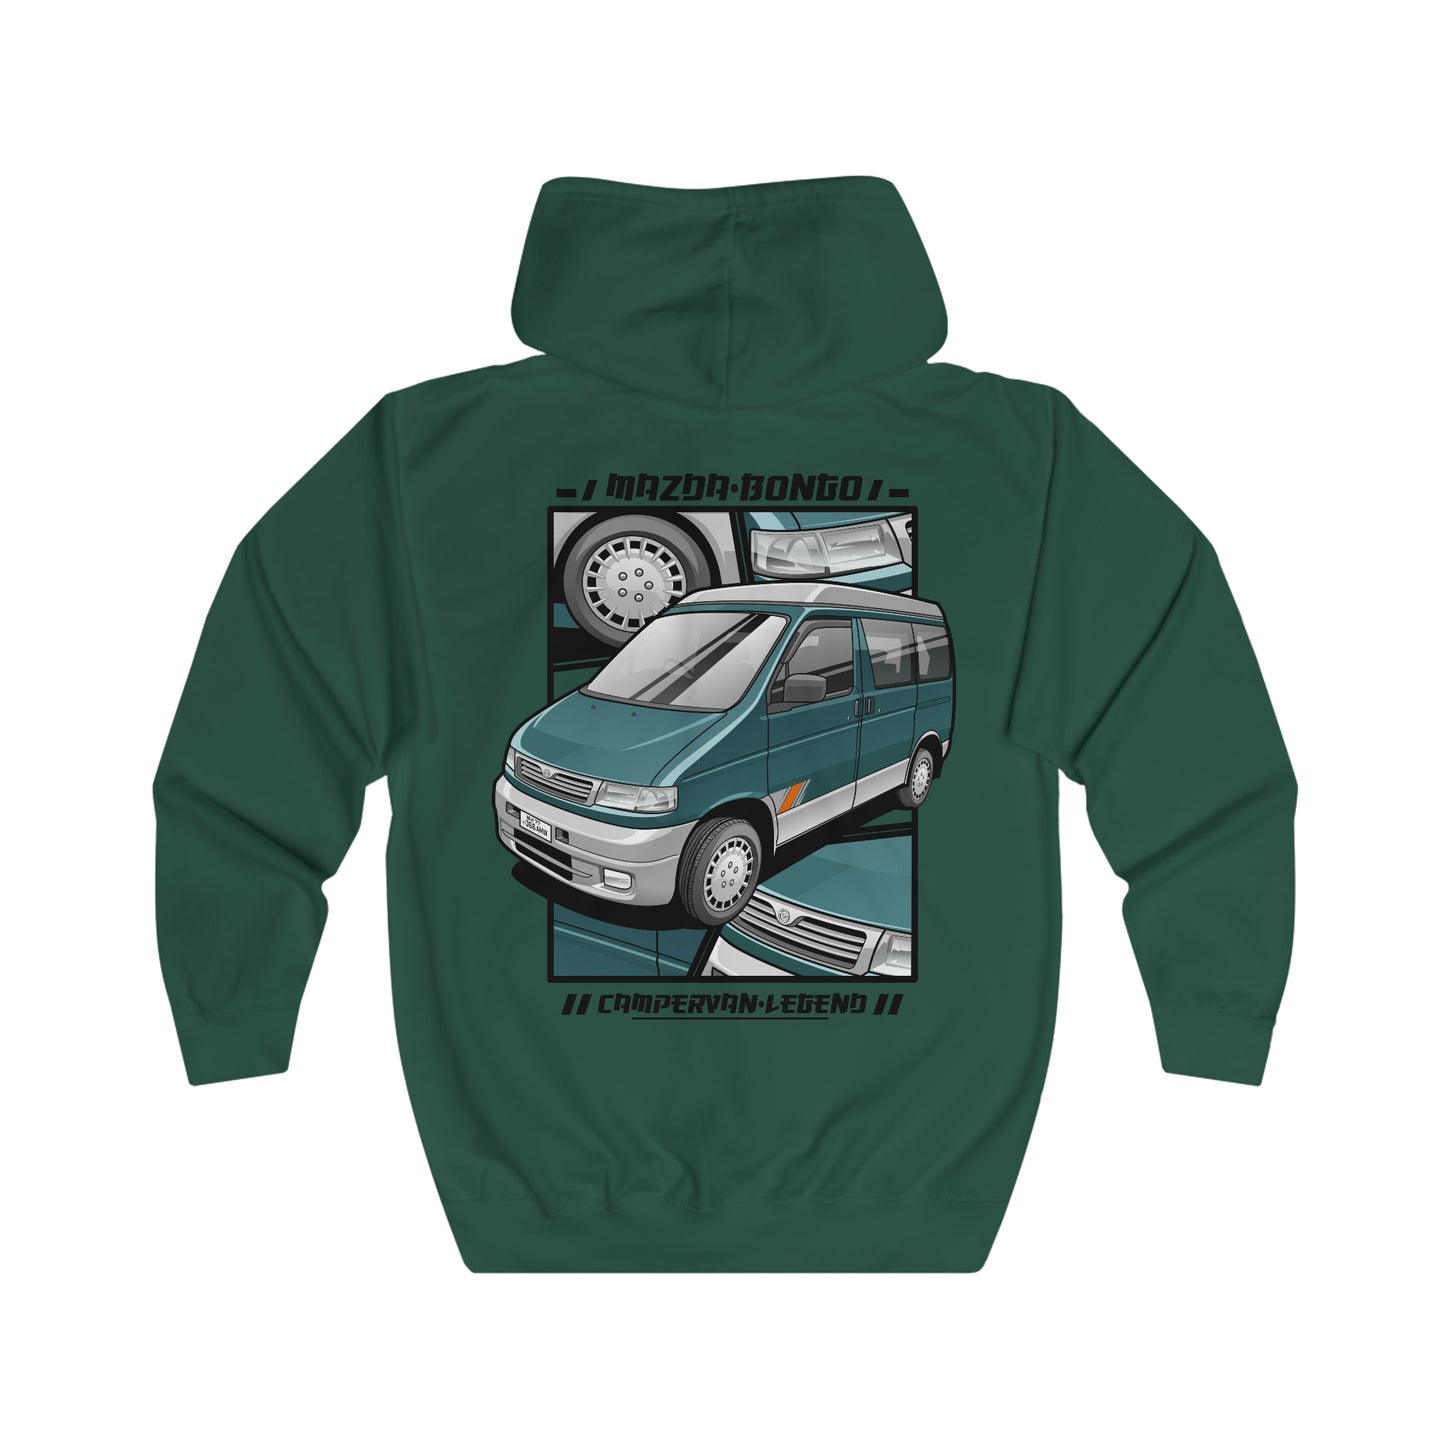 Mazda bongo campervan legend Unisex Full Zip Hoodie